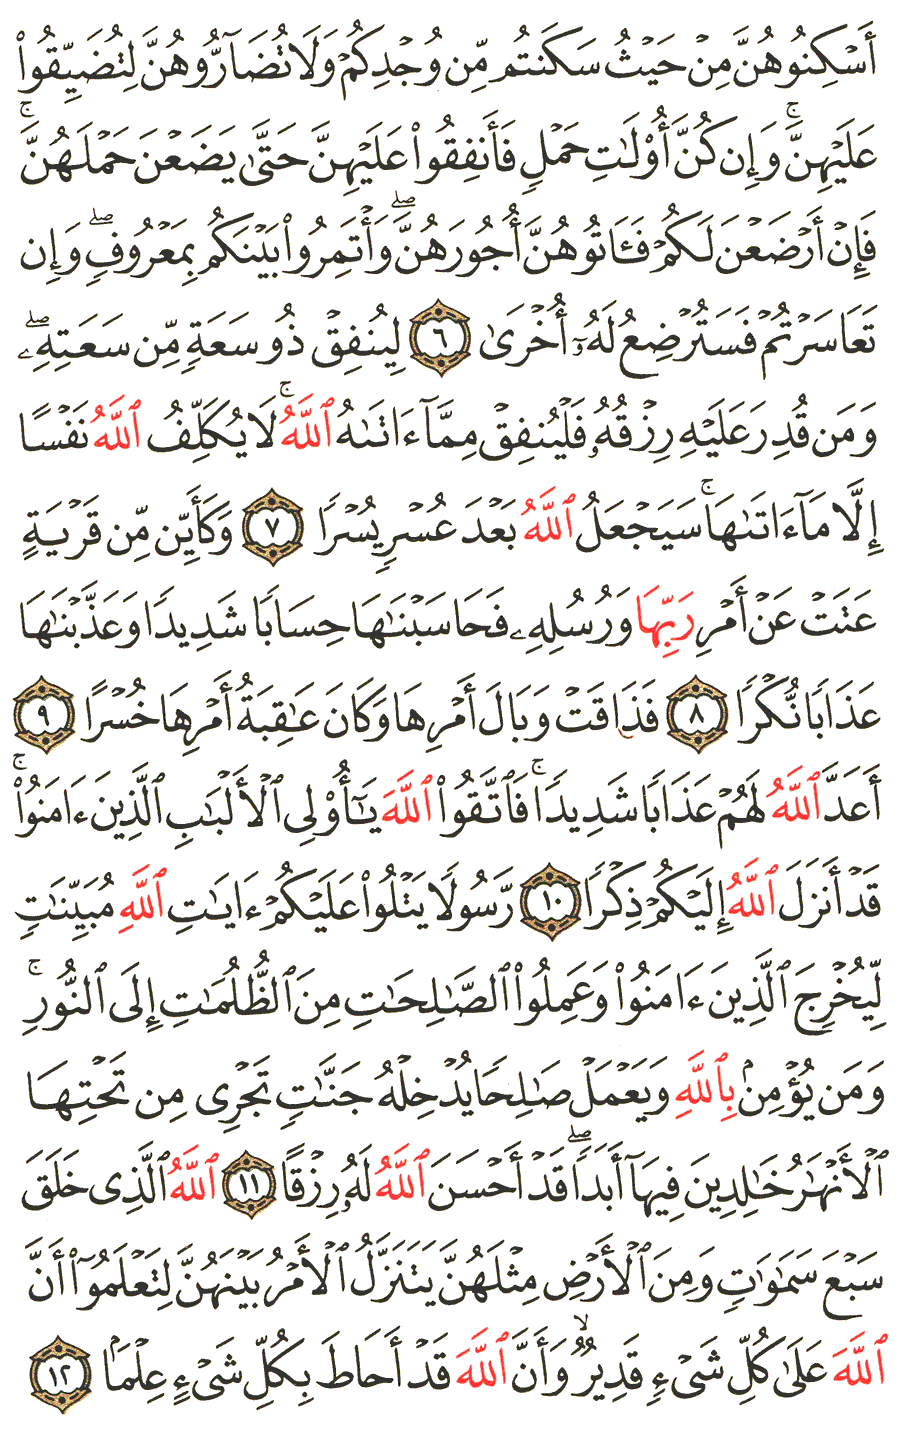 الصفحة 559 من القرآن الكريم